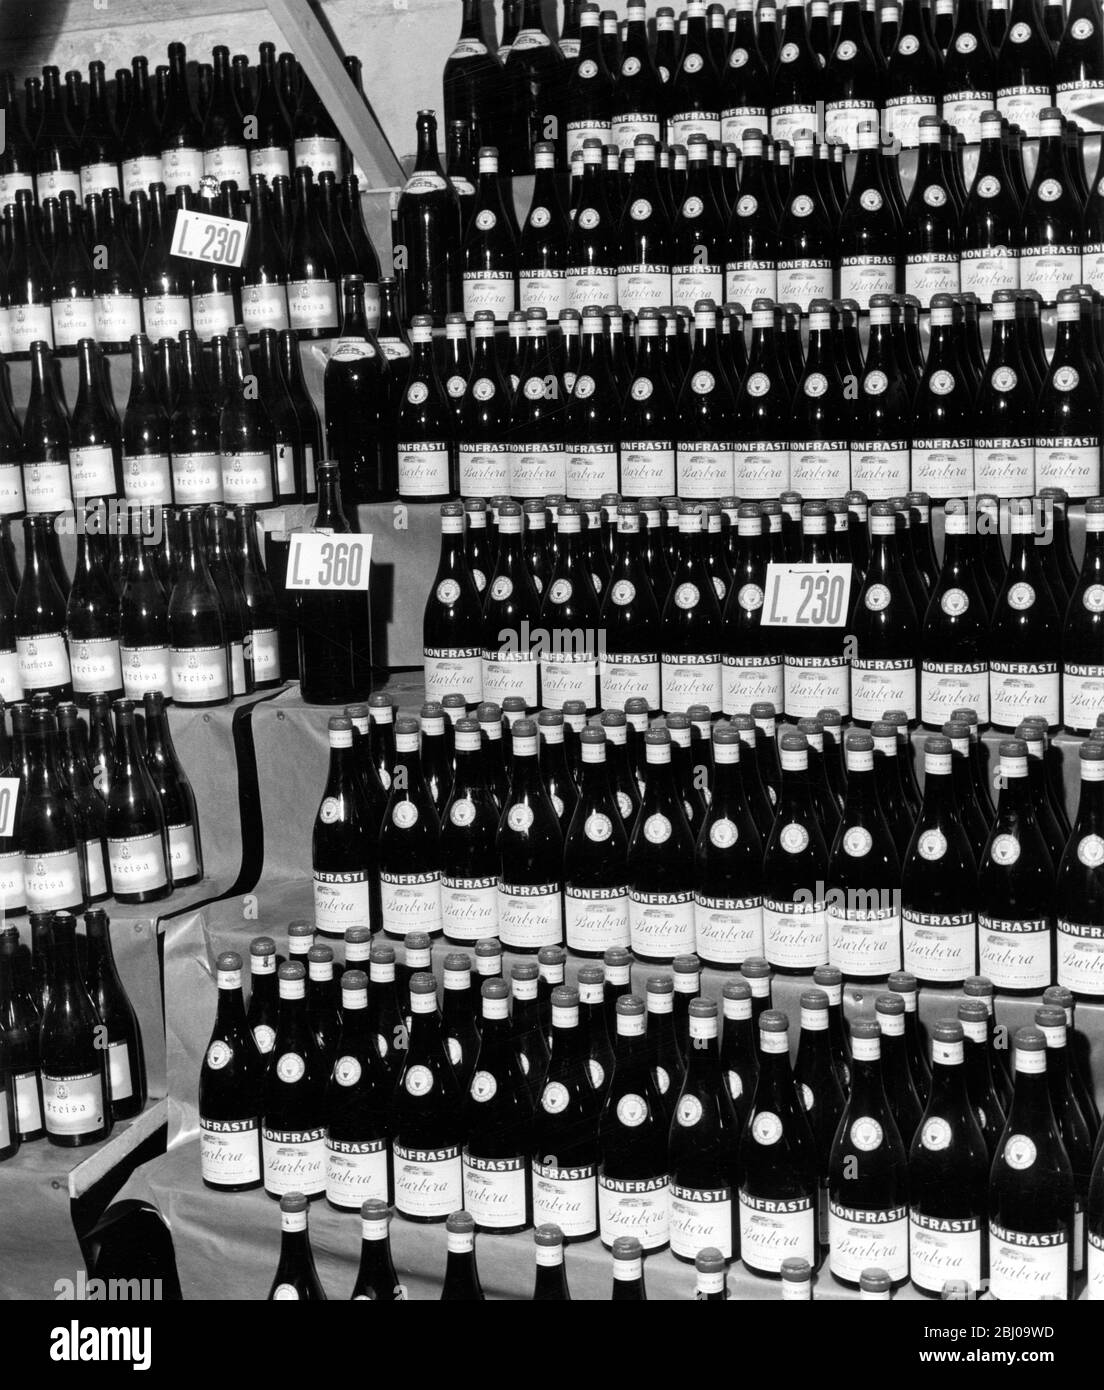 Flaschen Wein zum Verkauf aus der Rotweinsorte Barbera, Italien - undatiert Stockfoto